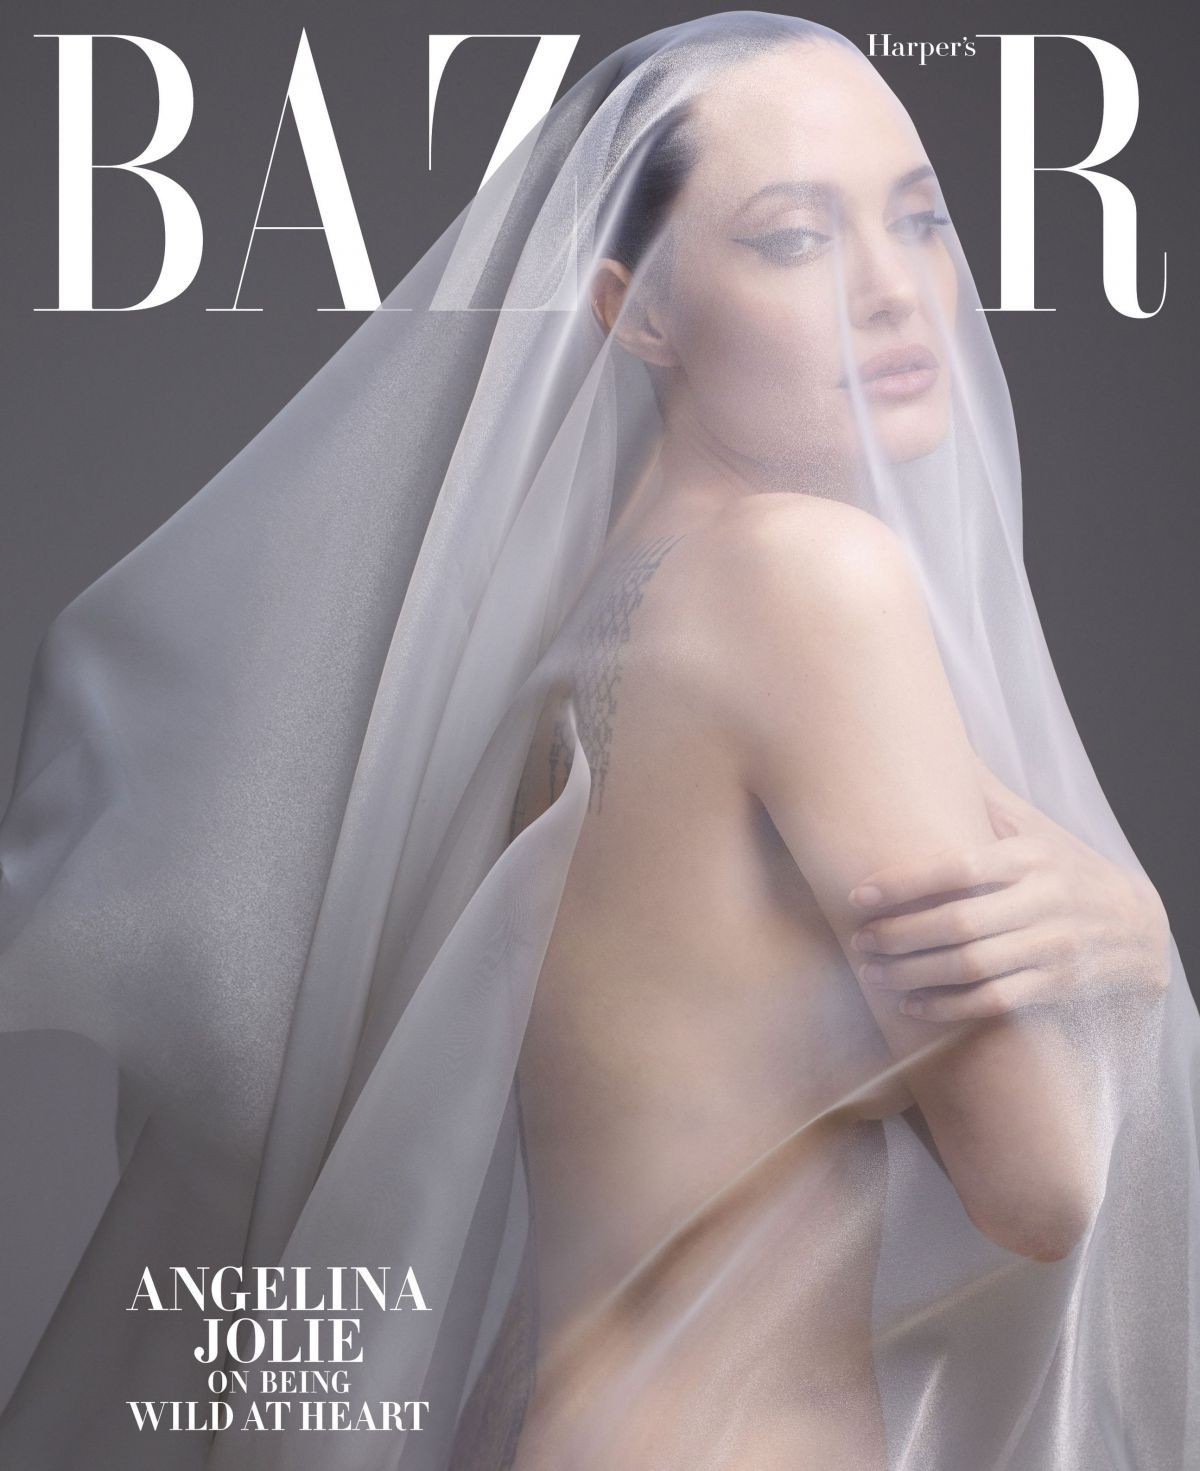 ANGELINA JOLIE in Harper’s Bazaar Magazine, December 2019/January 2020